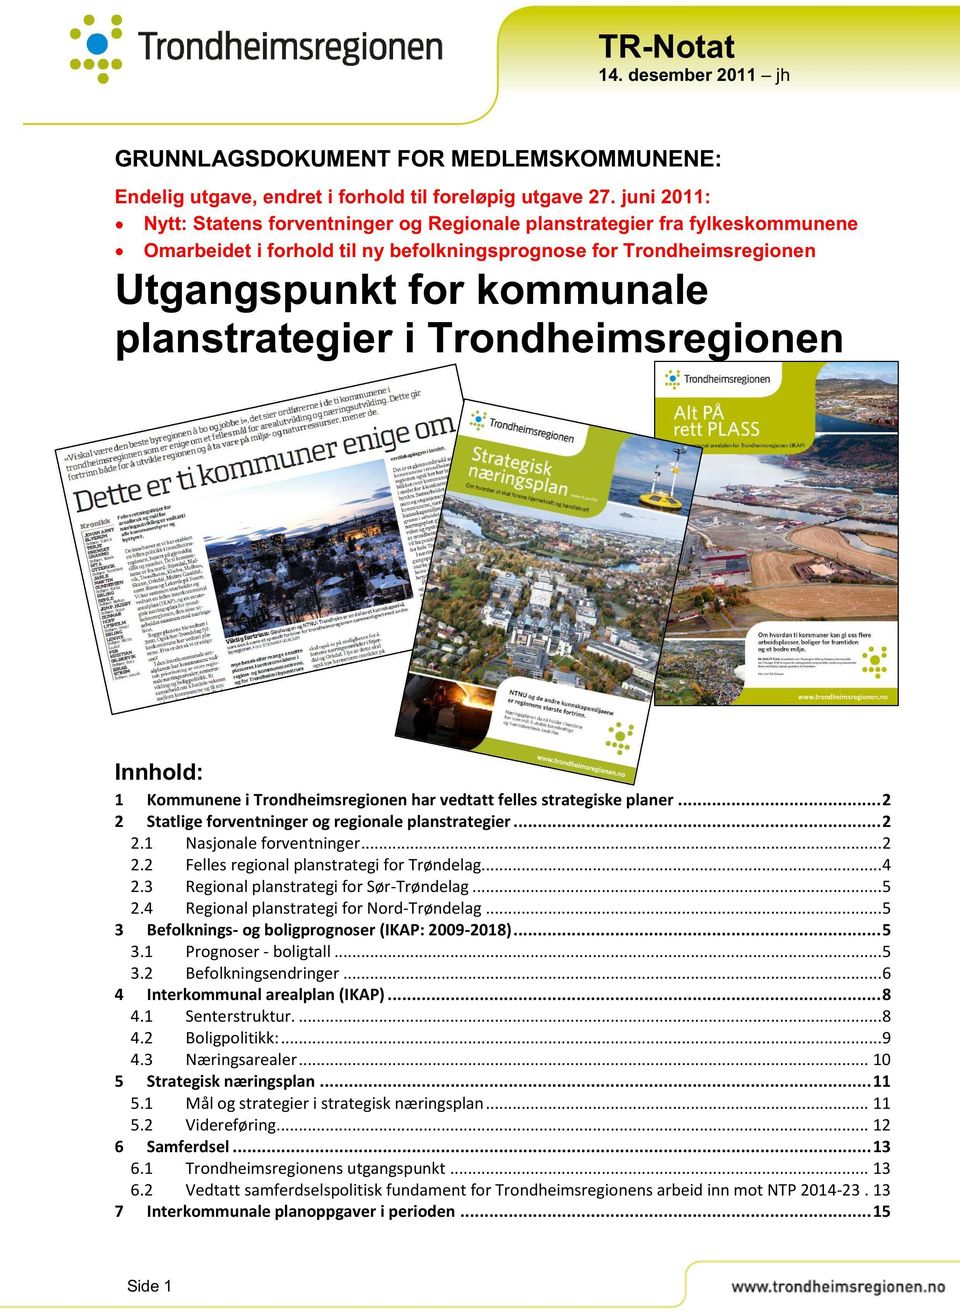 kommunale i Trondheimsreg ionen Innhold : 1 Kommunenei Trondheimsregionenhar vedtatt felles strategiskeplaner...2 2 Statligeforventninger og regionaleplanstrategier...2 2.1 Nasjonaleforventninger.........2 2.2 Fellesregionalplanstrategi for Trøndelag.